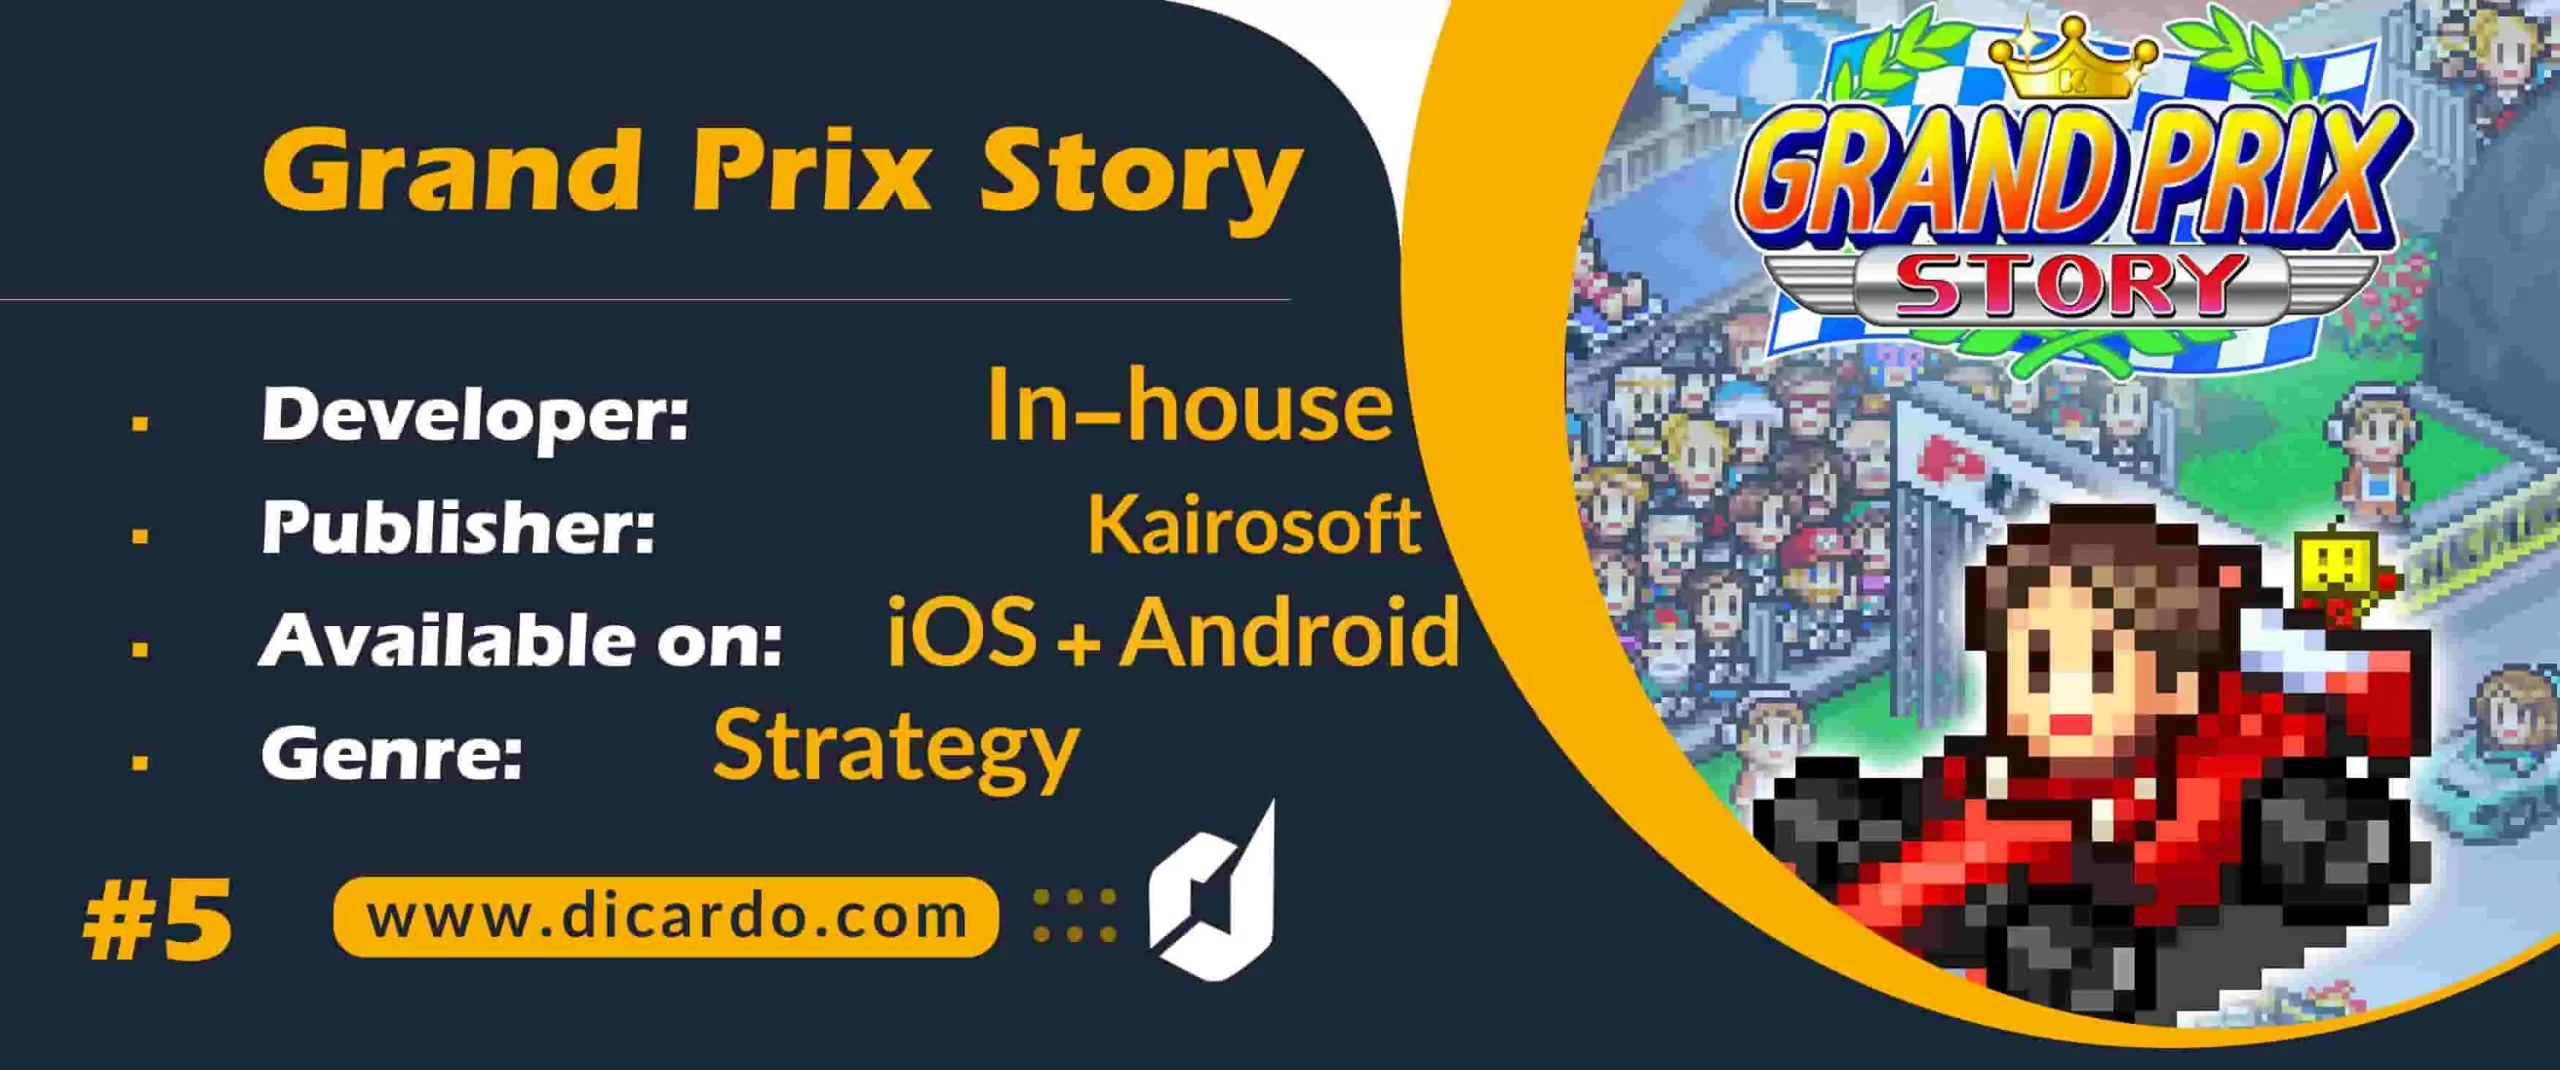 #5 گرند پریکس استوری Grand Prix Story آخرین مورد از بهترین بازیهای مسابقه ای دوبعدی برای آندروید و iOS